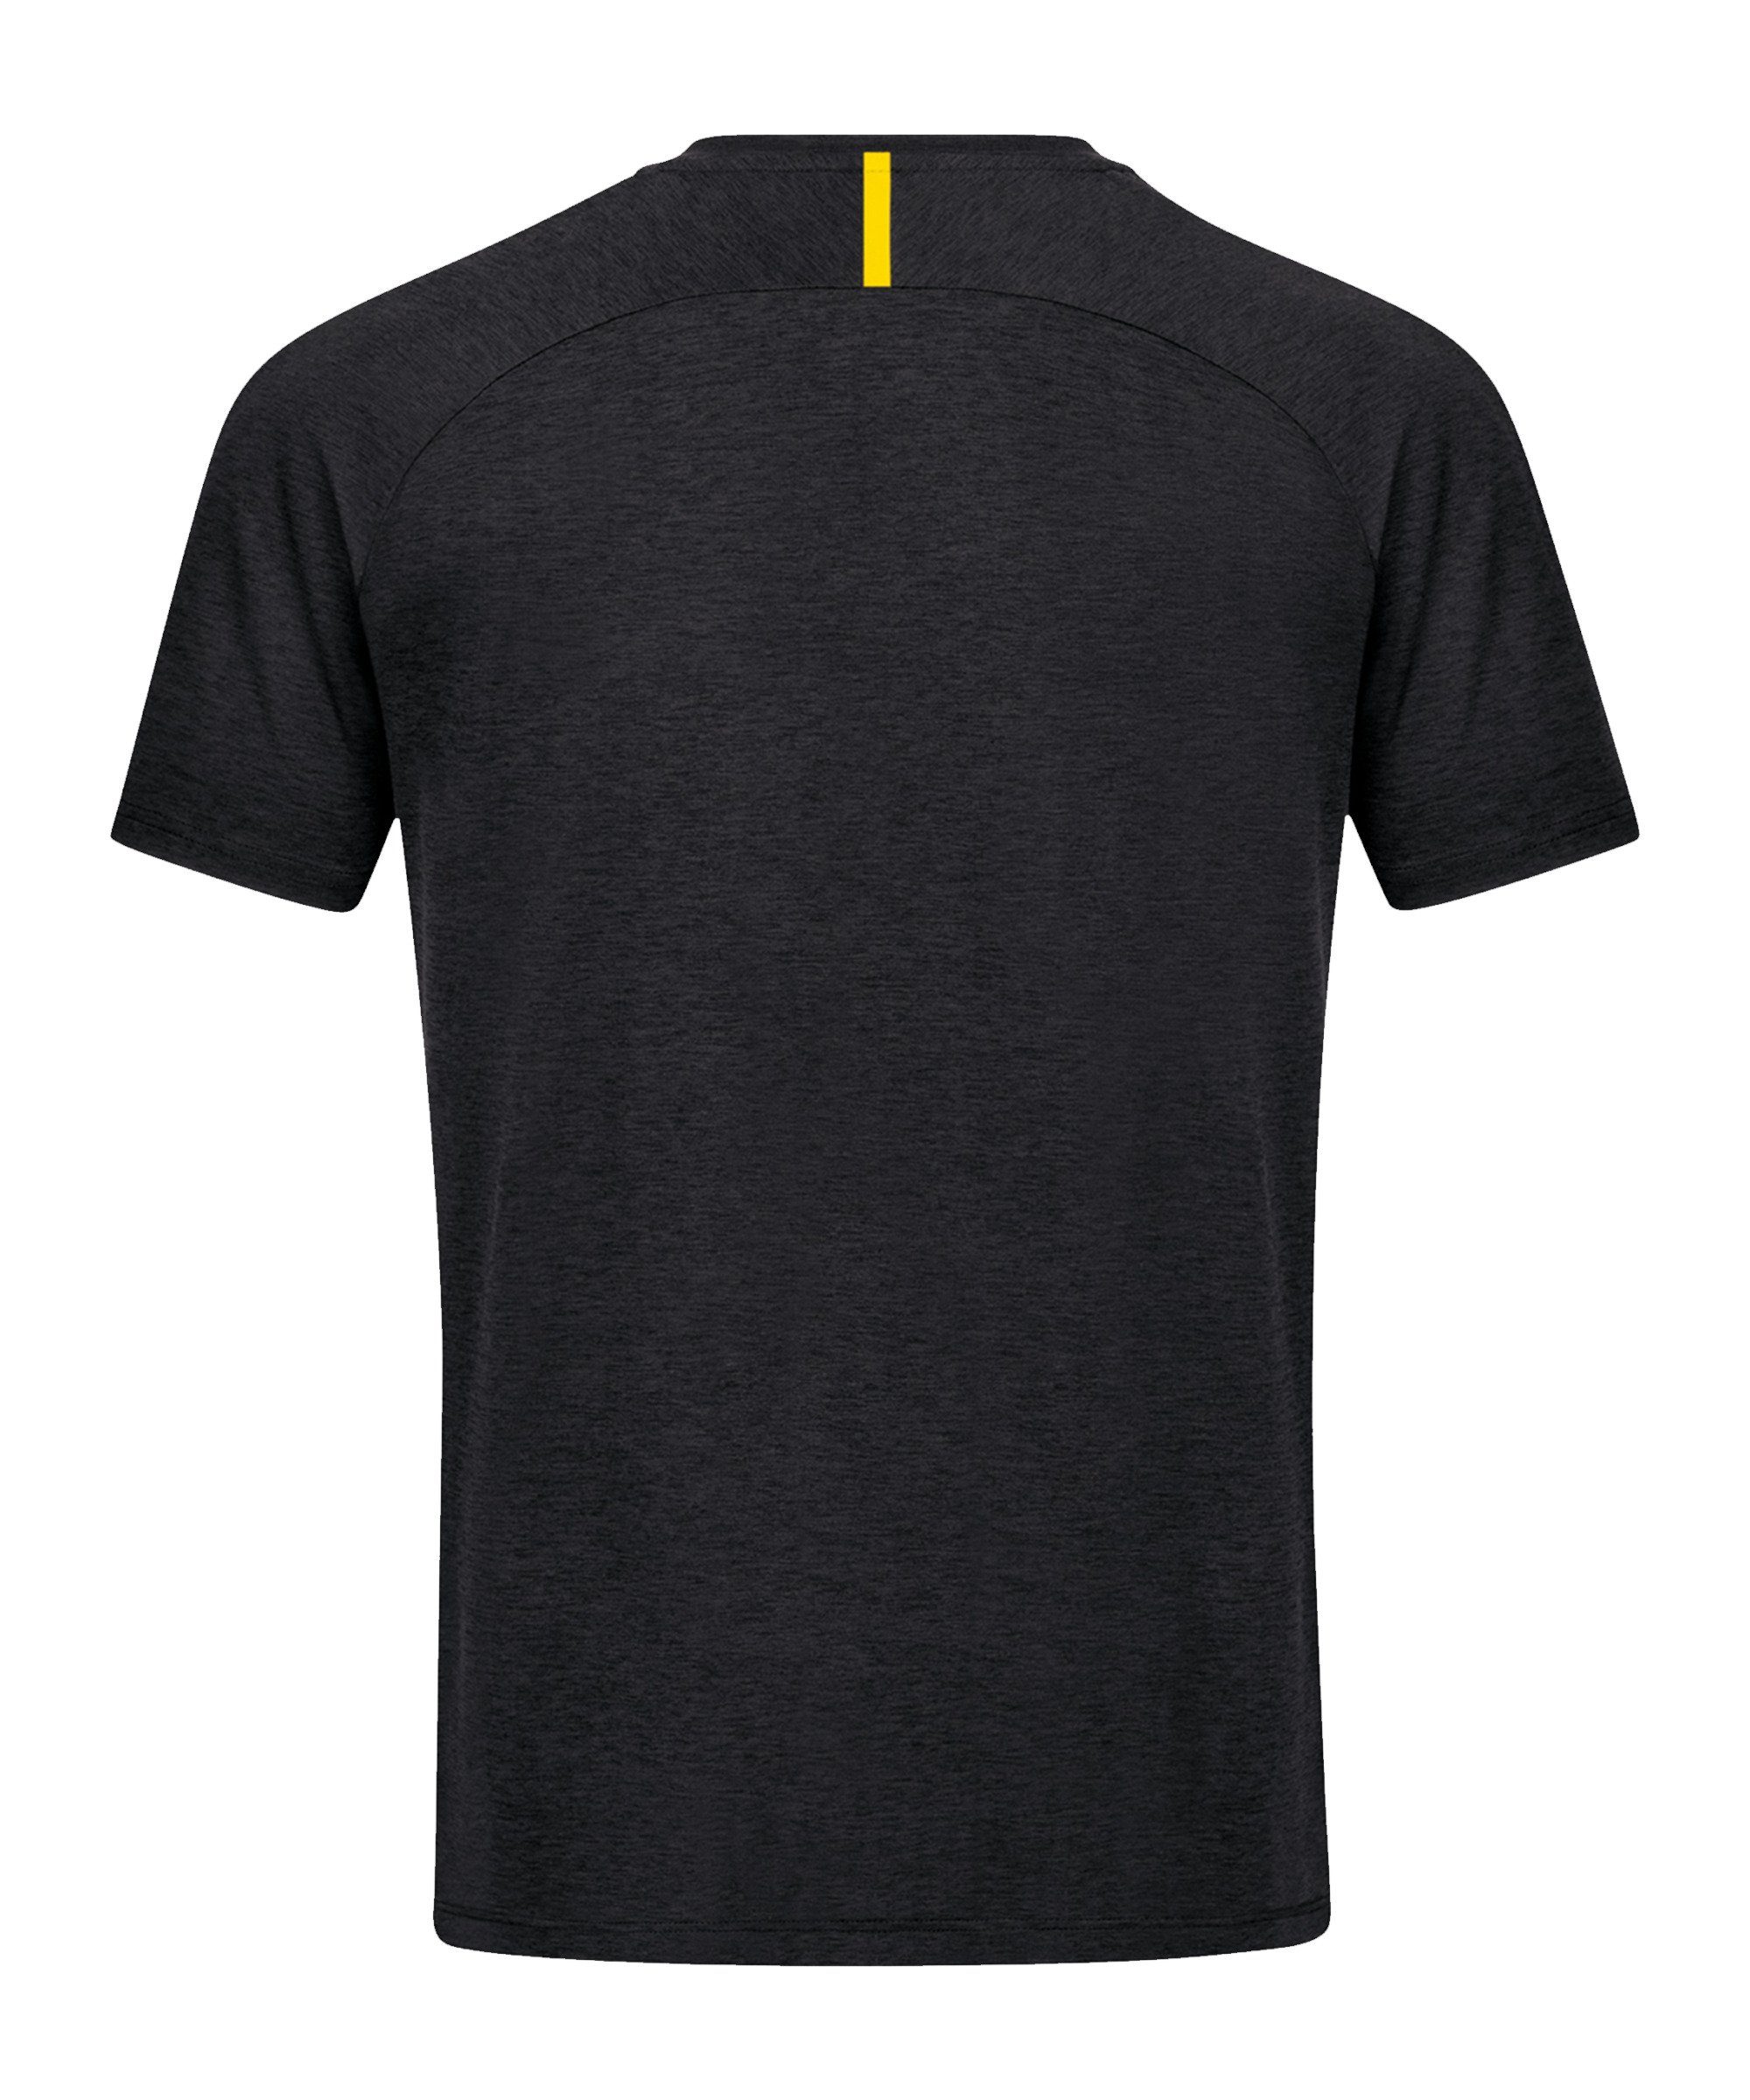 Freizeit Challenge default T-Shirt schwarzgelb Jako T-Shirt